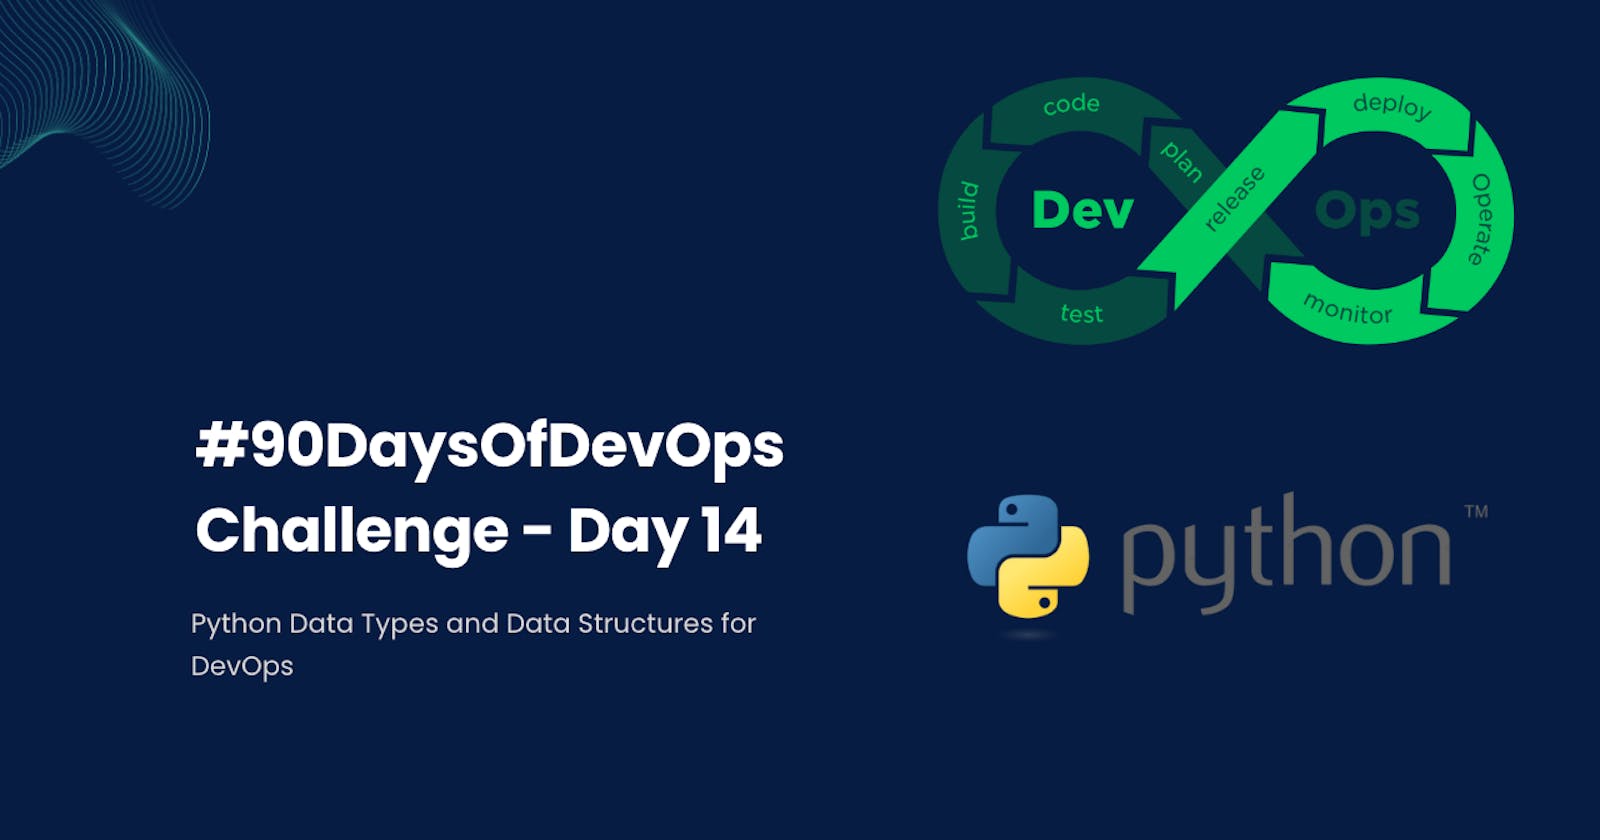 #90DaysOfDevOps Challenge - Day 14 - Python Data Types and Data Structures for DevOps